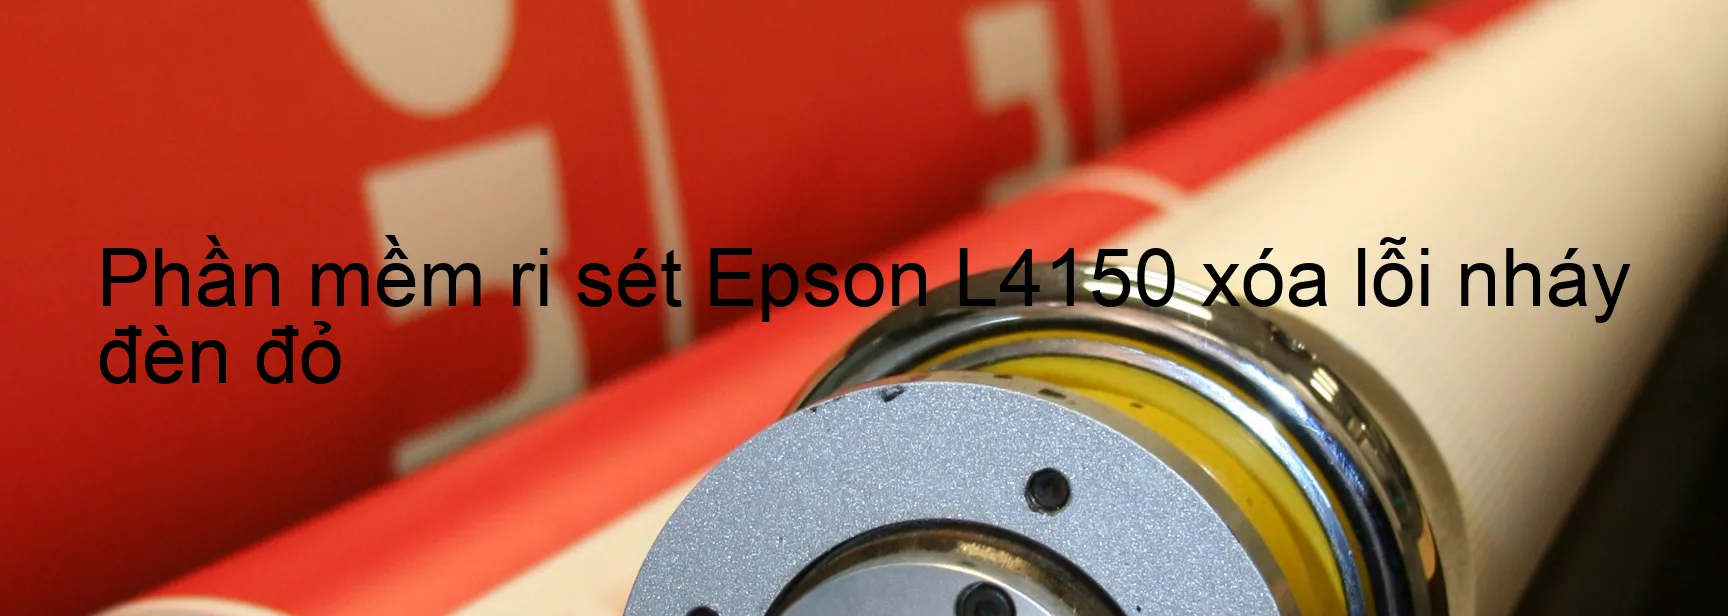 Phần mềm reset Epson L4150 xóa lỗi nháy đèn đỏ